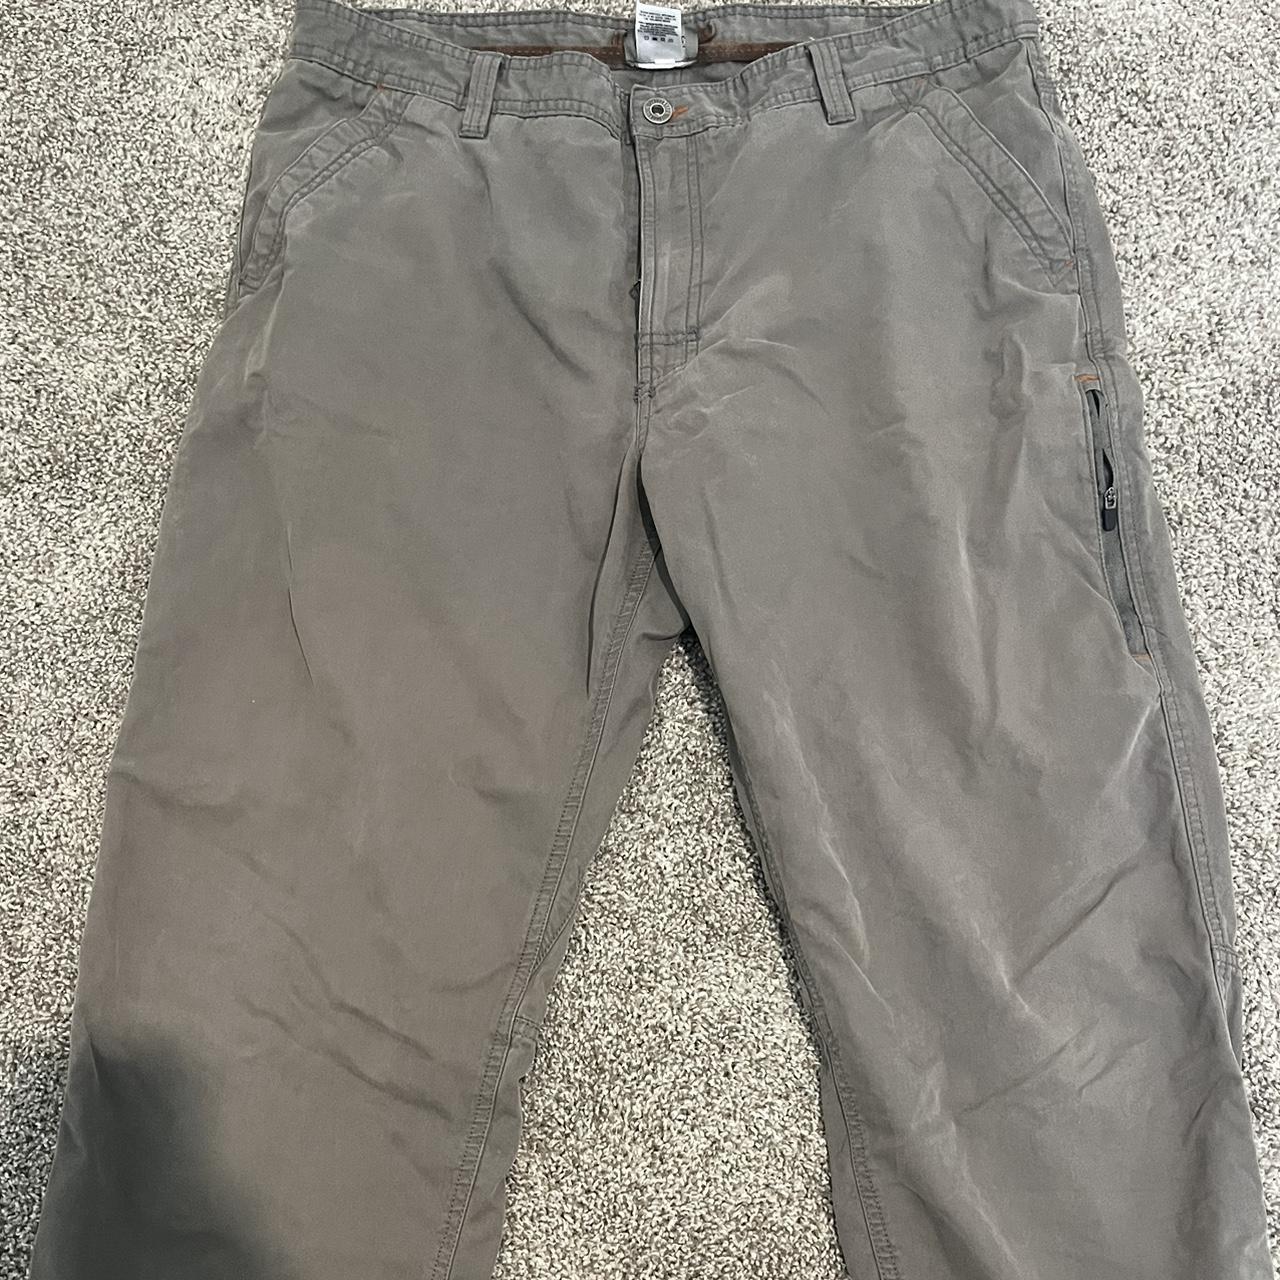 Outdoor life cargo pants 38x32 - Depop